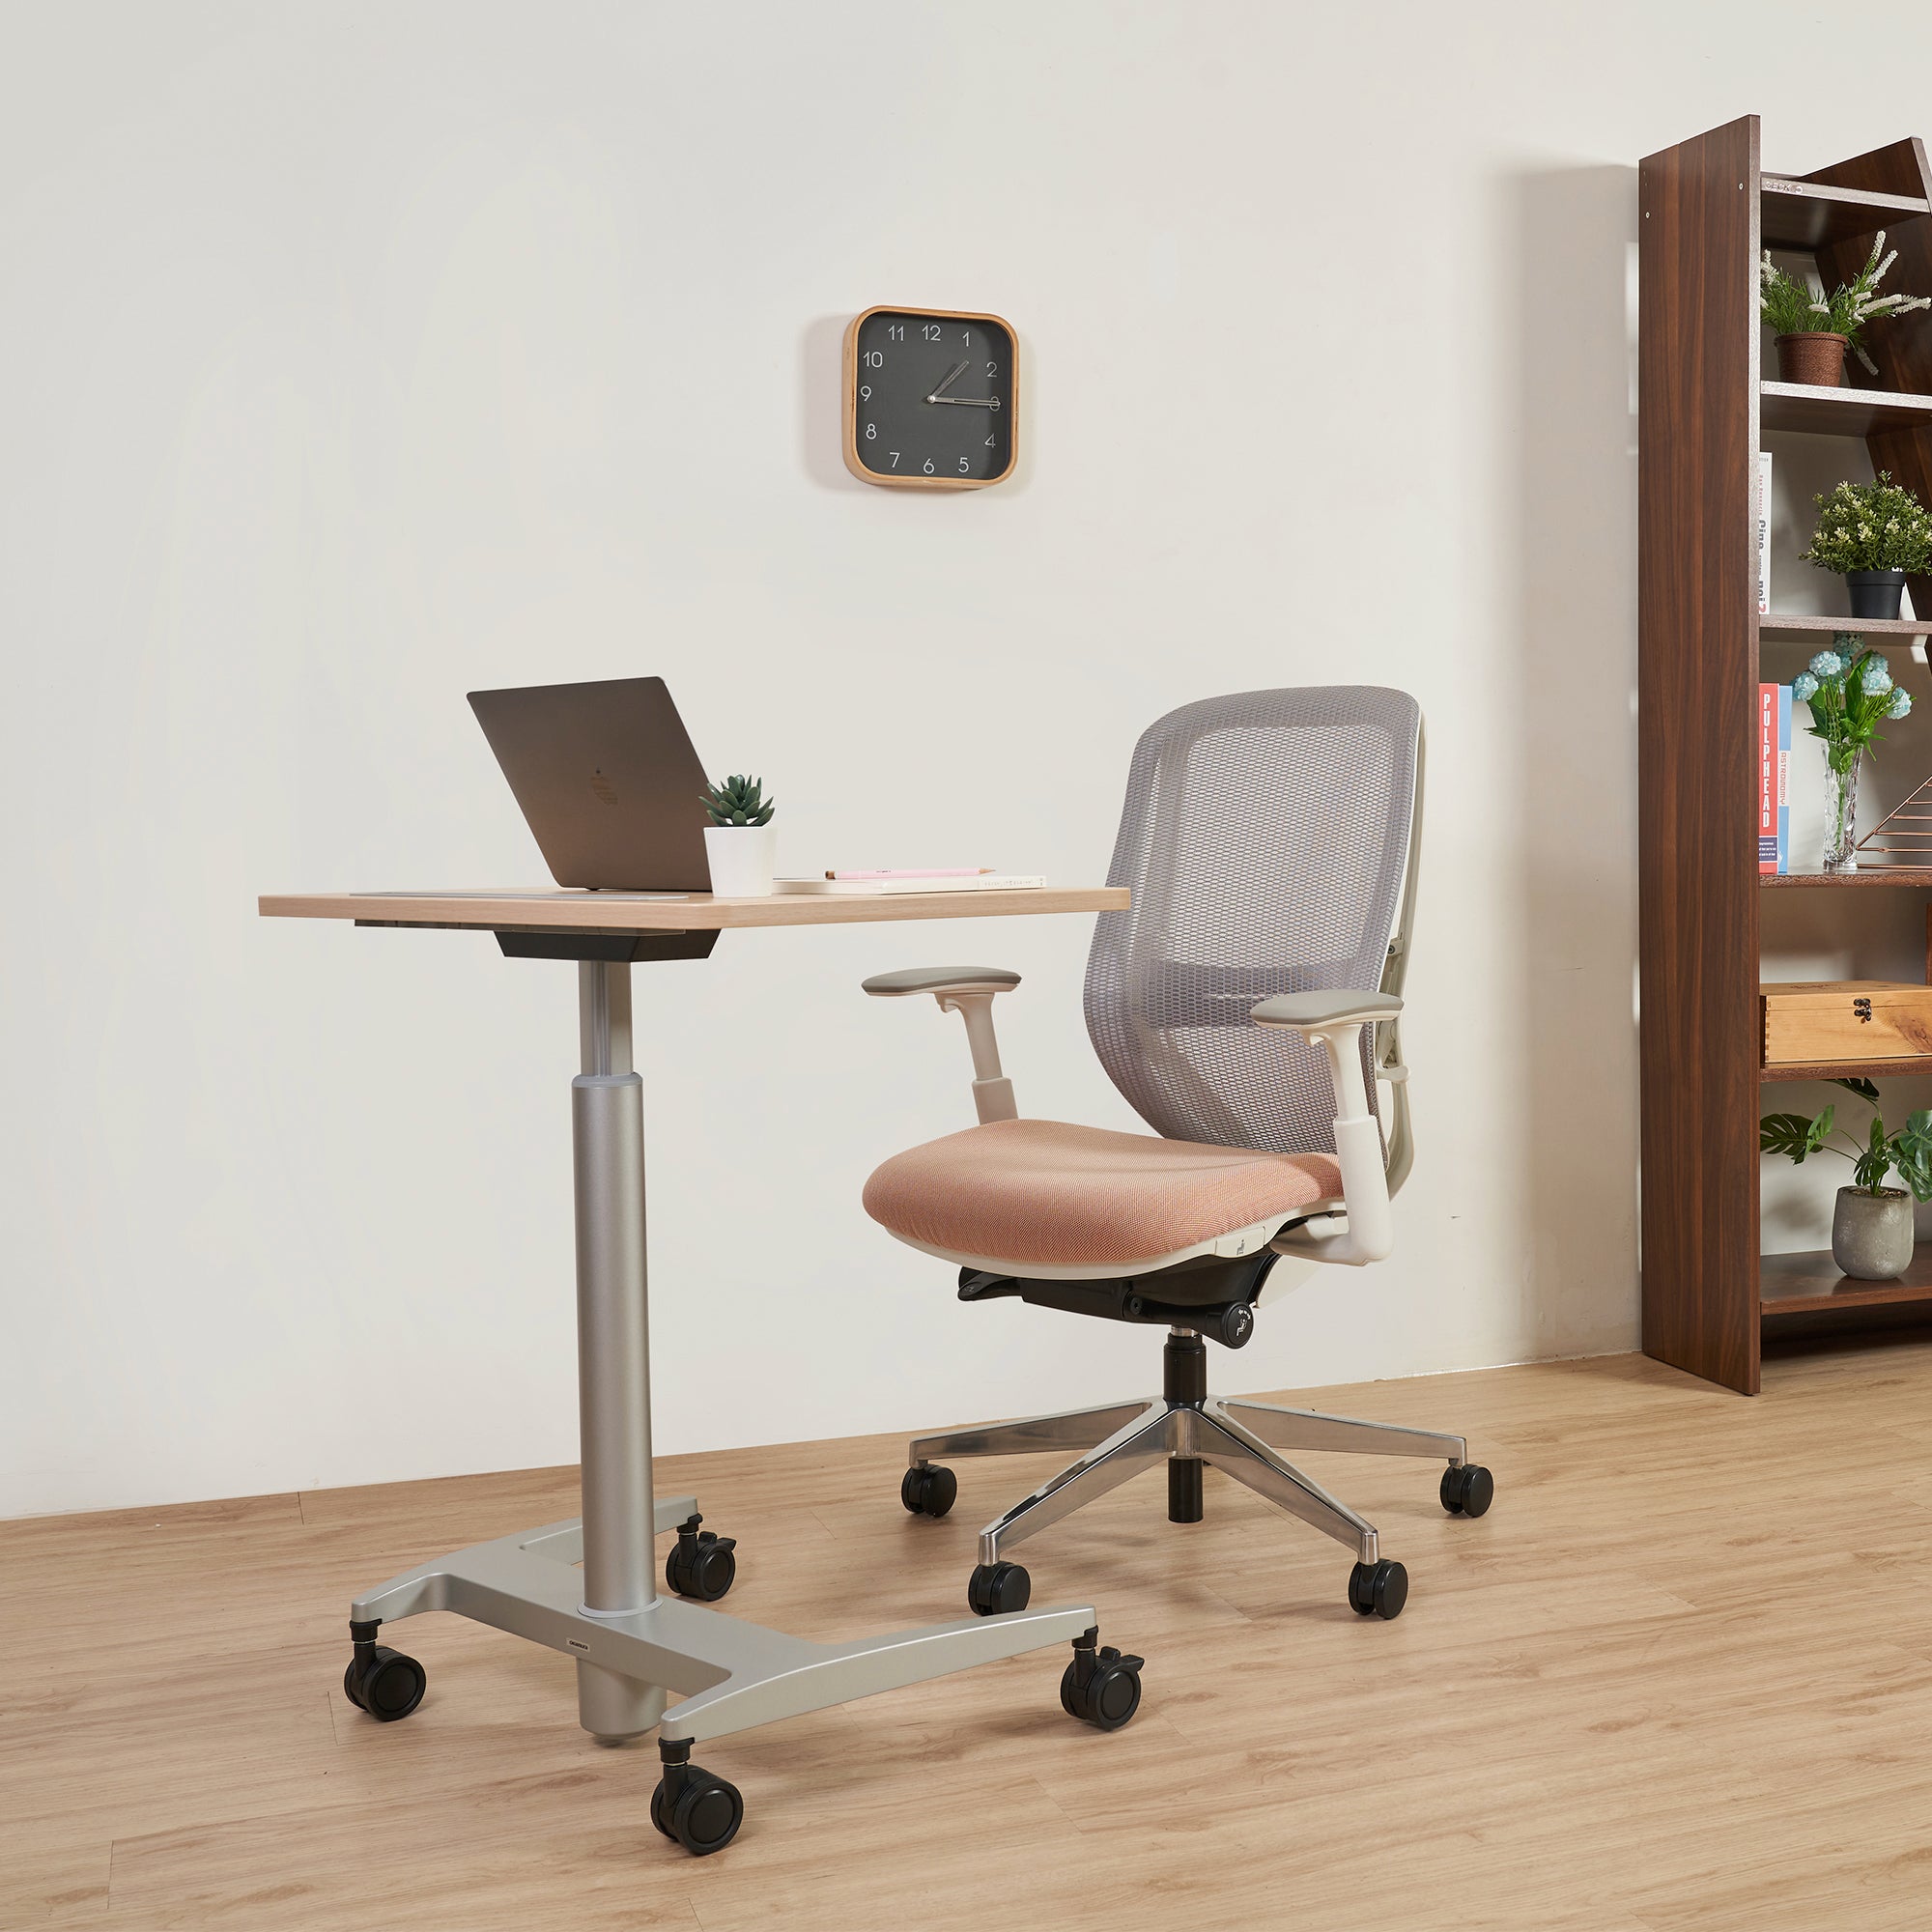 使用較耐用材料製成的辦公椅，能夠經受長時間使用的考驗